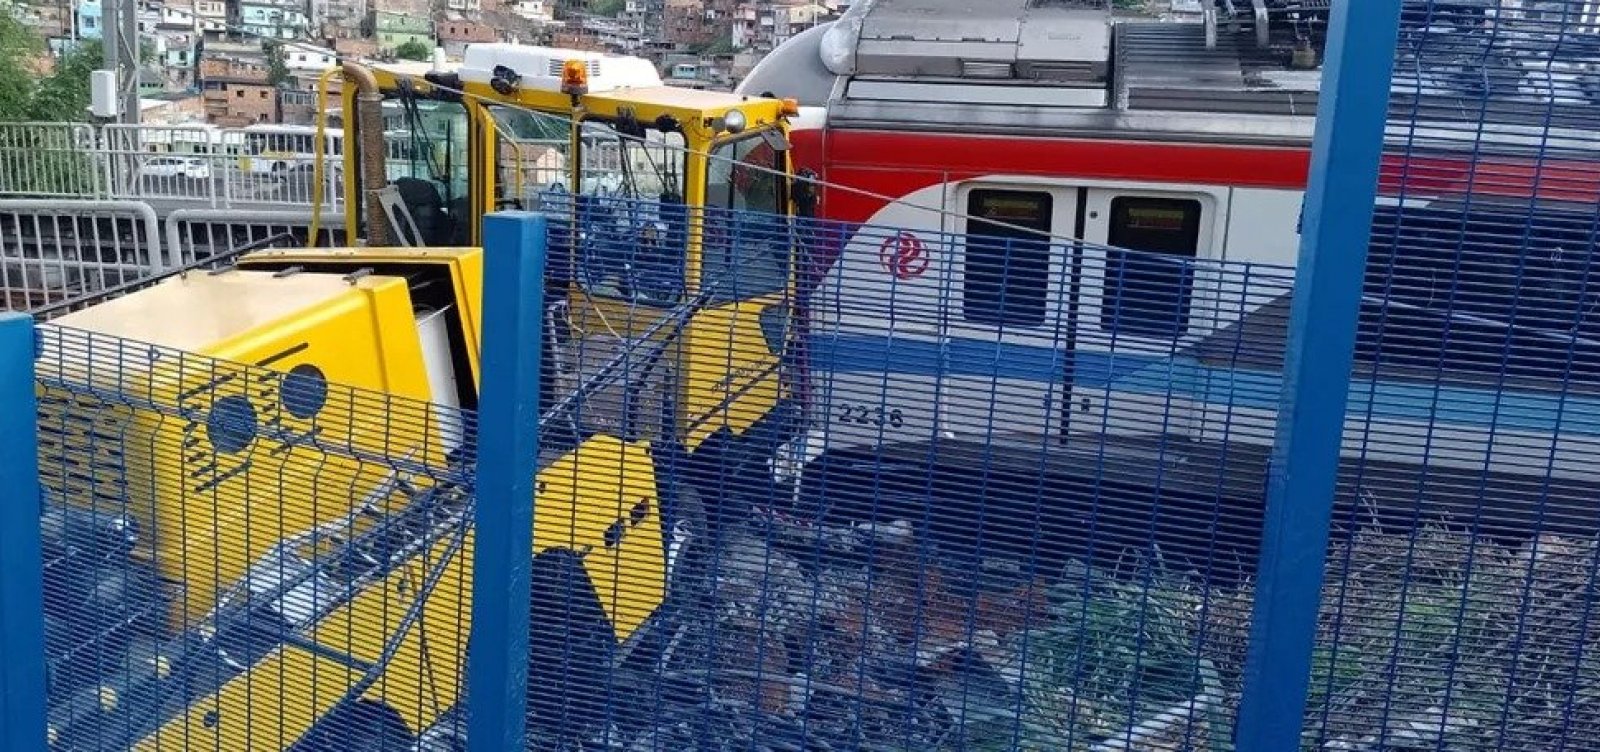 Trem de metrô se choca com caminhão de serviço e operação é interrompida na Estação Pirajá; veja vídeo